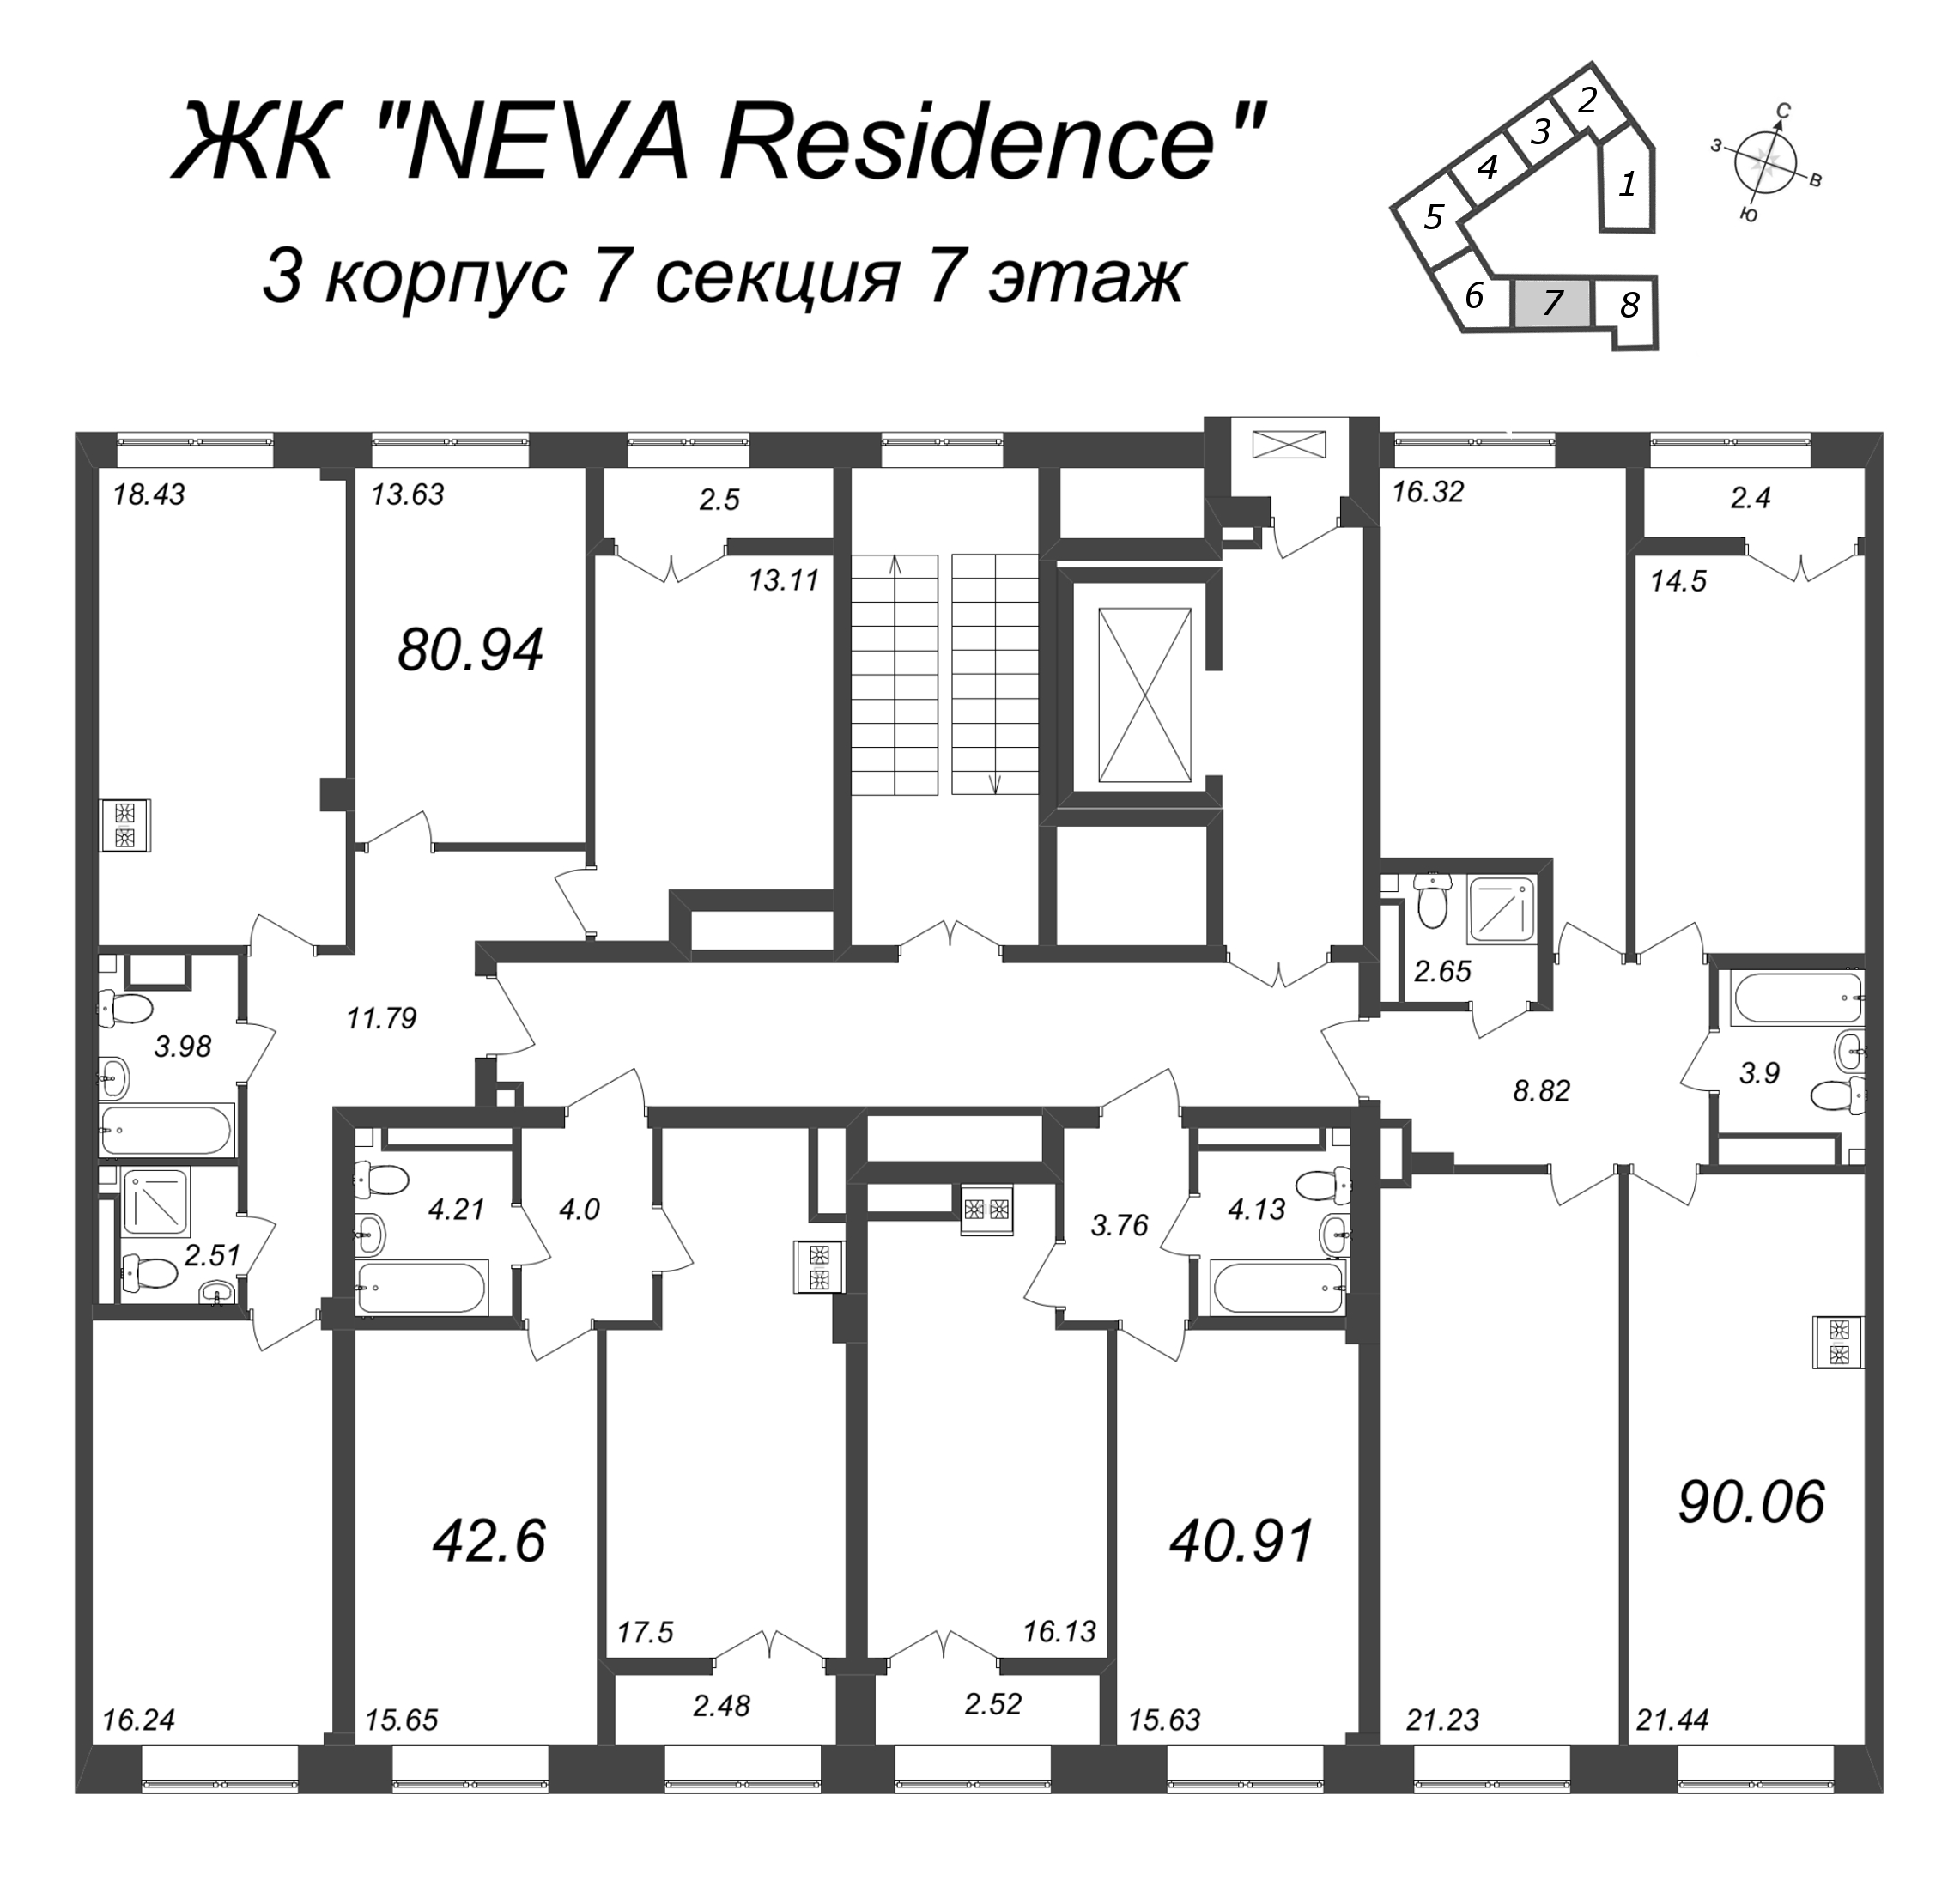 4-комнатная (Евро) квартира, 80.94 м² в ЖК "Neva Residence" - планировка этажа